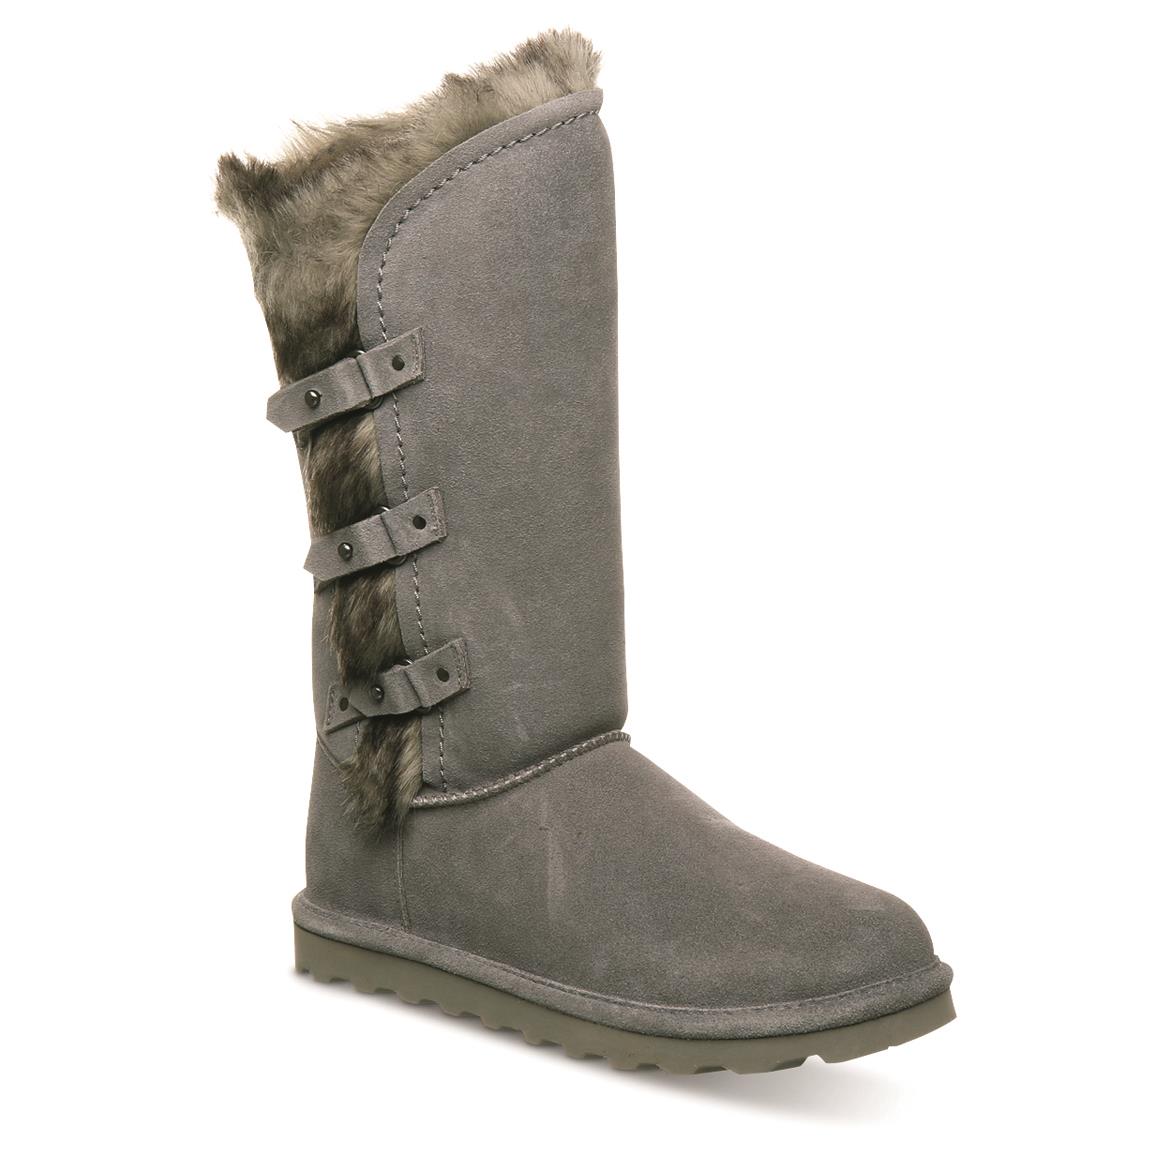 Bearpaw Women's Emery Suede Boots, Gray Fog